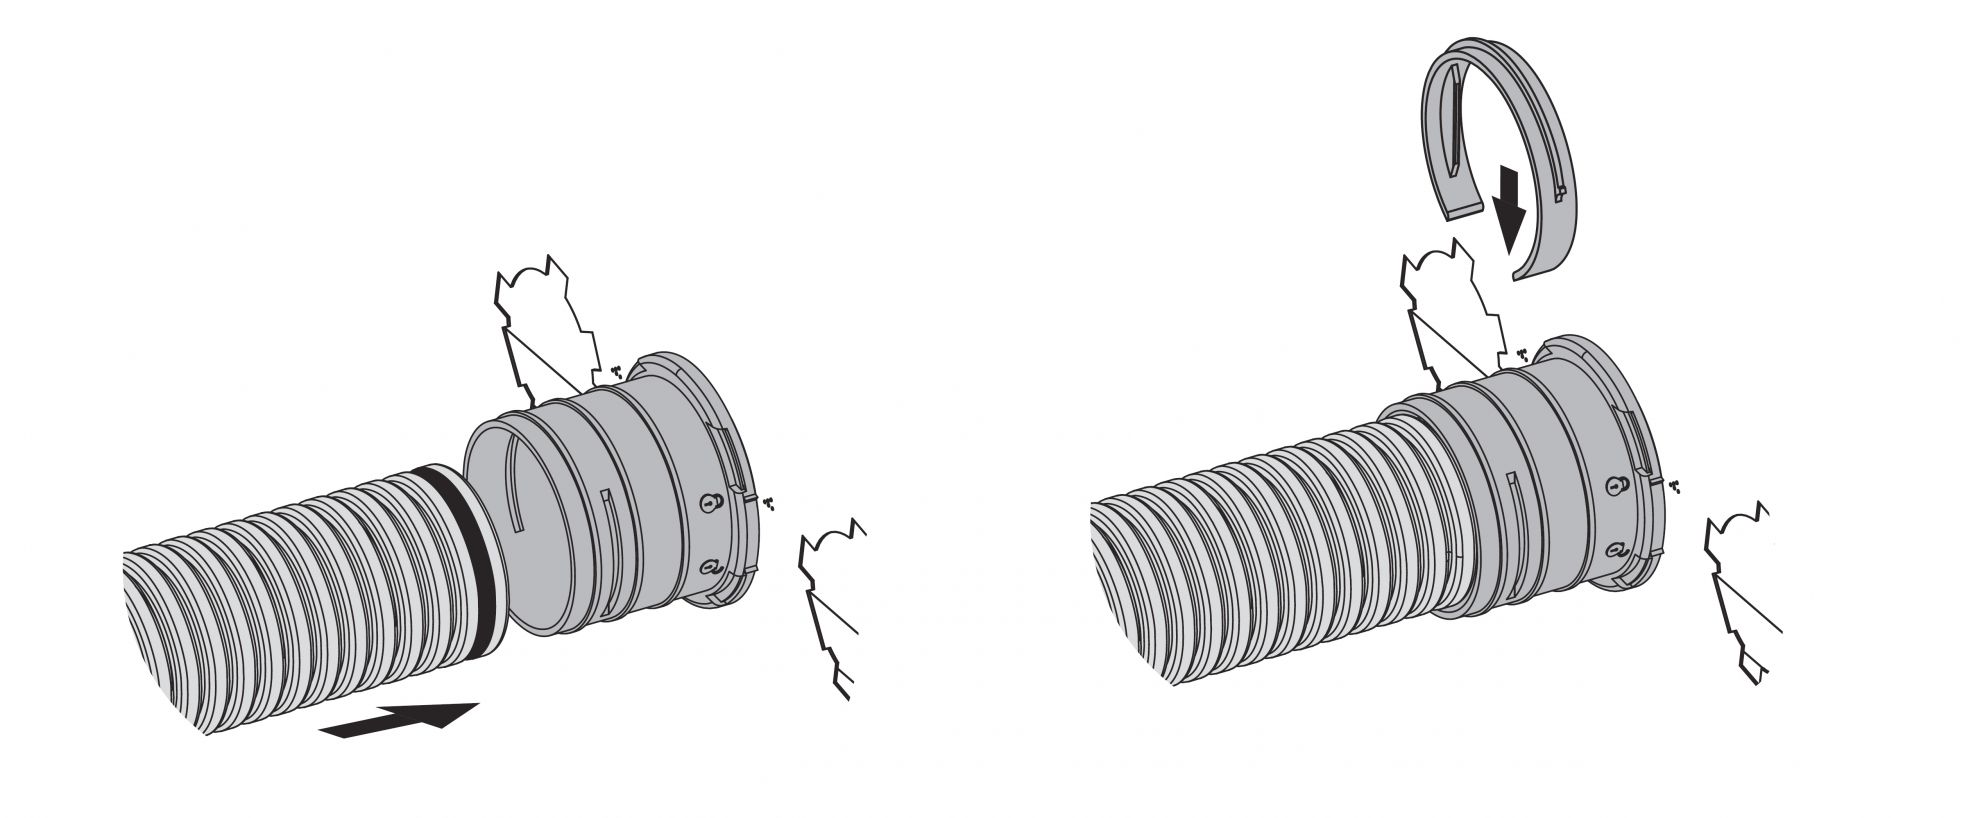 Skrzynka rozprężna służy do połączenia klasycznego kanału wentylacyjnego o średnicy 125 mm z kanałowym systemem wentylacyjnym Flexitech Ø 75 mm